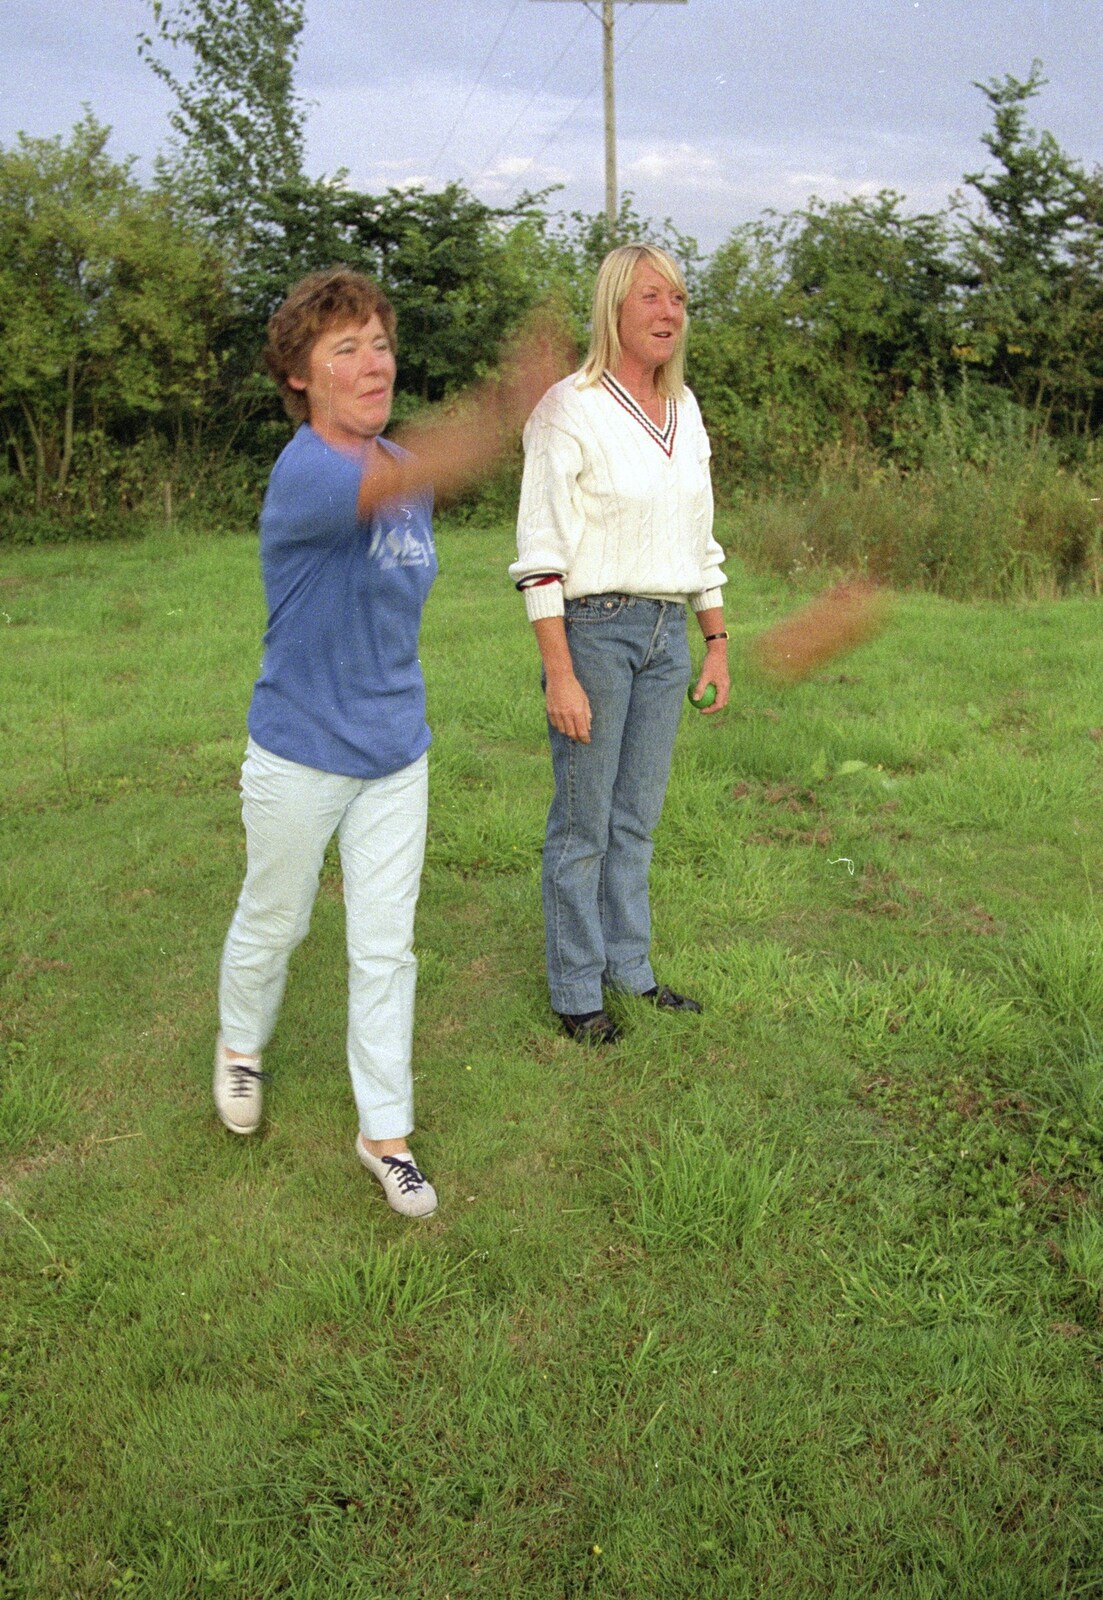 Sue's Fire Dance, Stuston, Suffolk - 21st July 1990: Brenda flings a horseshoe